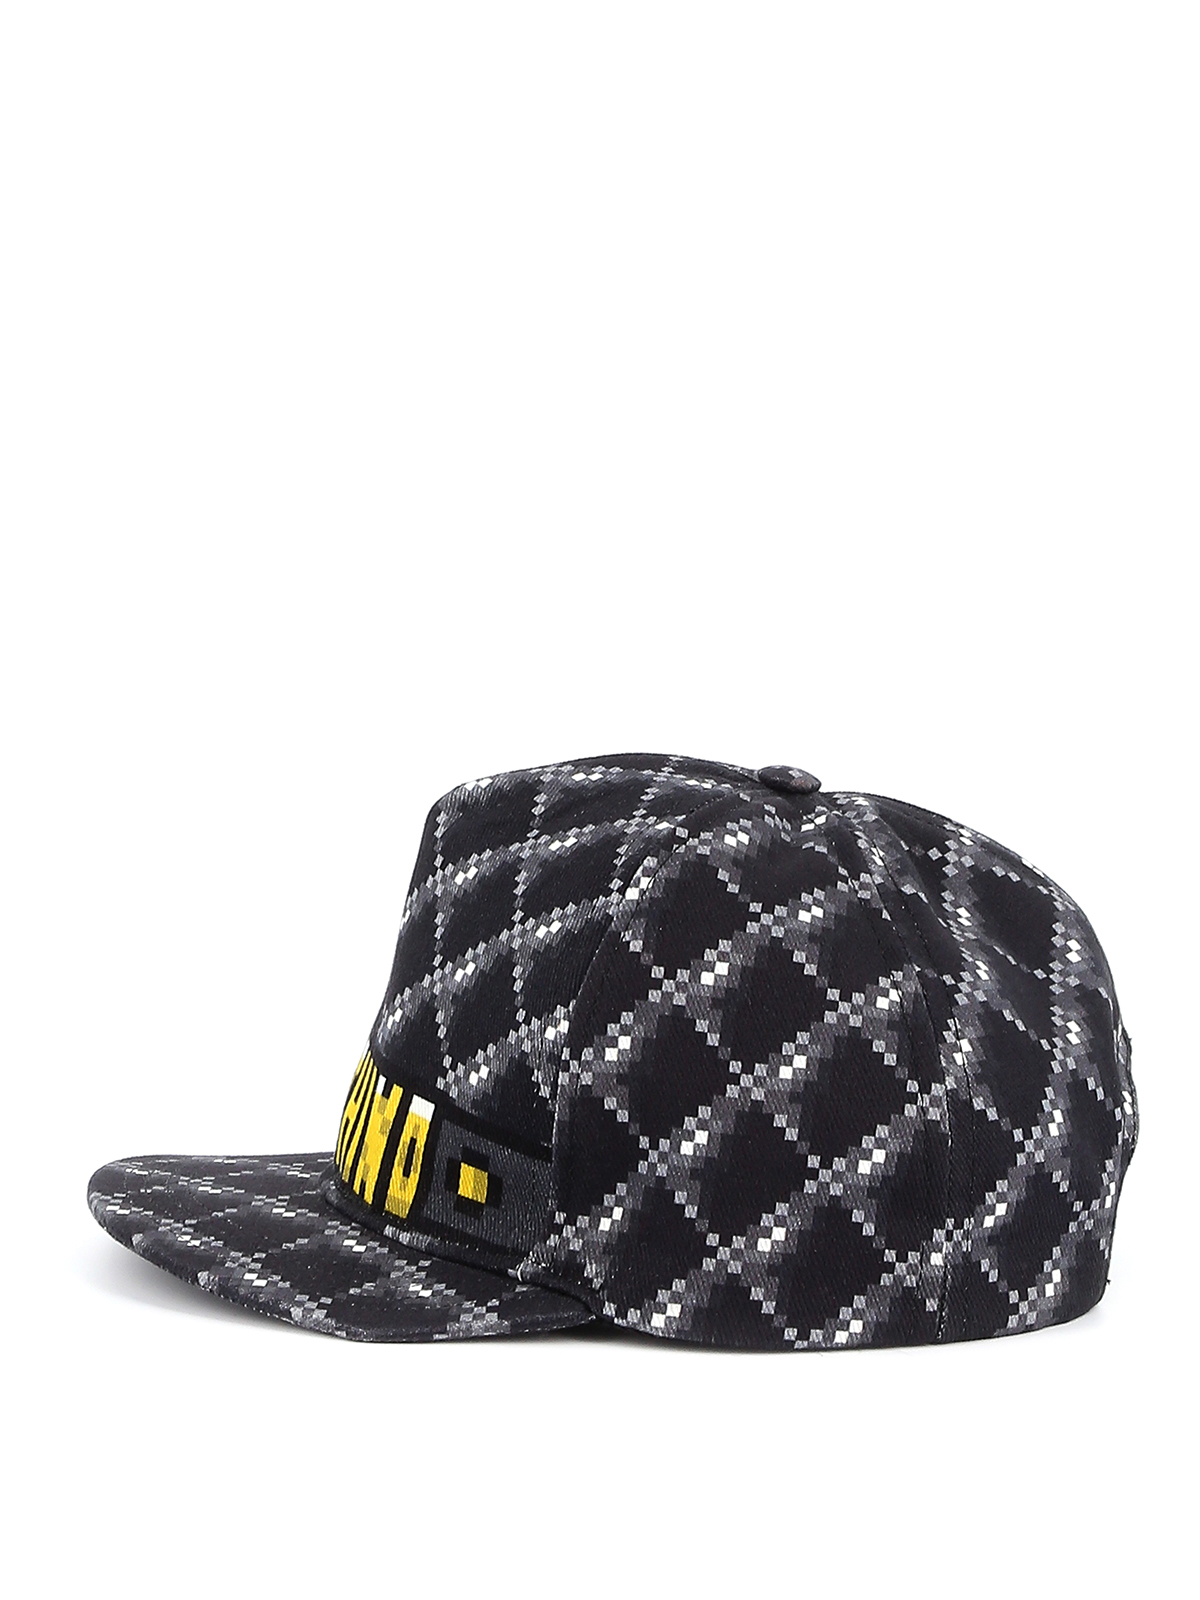 Hats & caps Moschino - Pixel baseball cap - 927982531555 | iKRIX.com